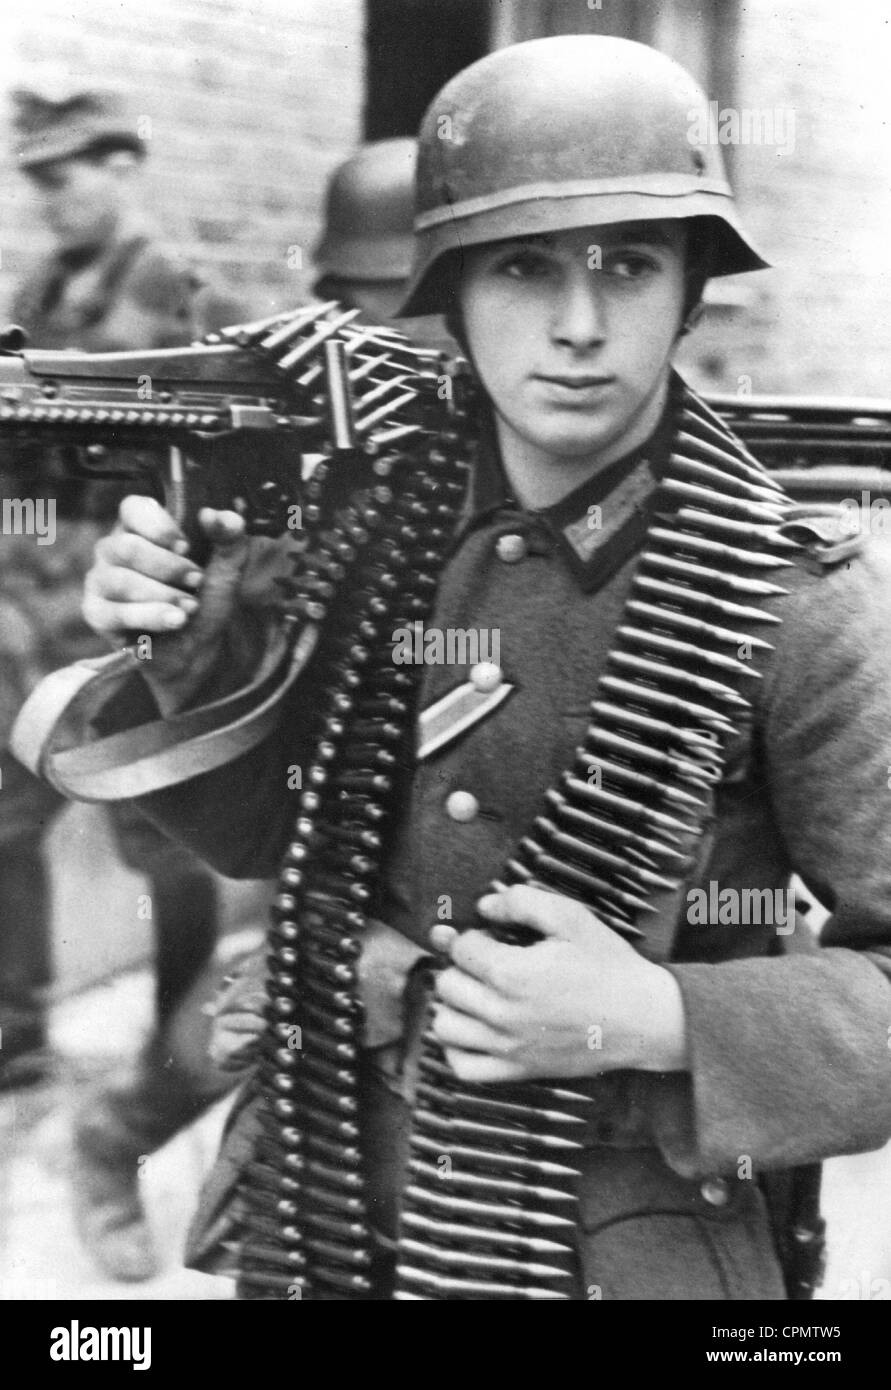 L'artilleur mahcine allemand sur le front de l'Ouest, 1944 Banque D'Images